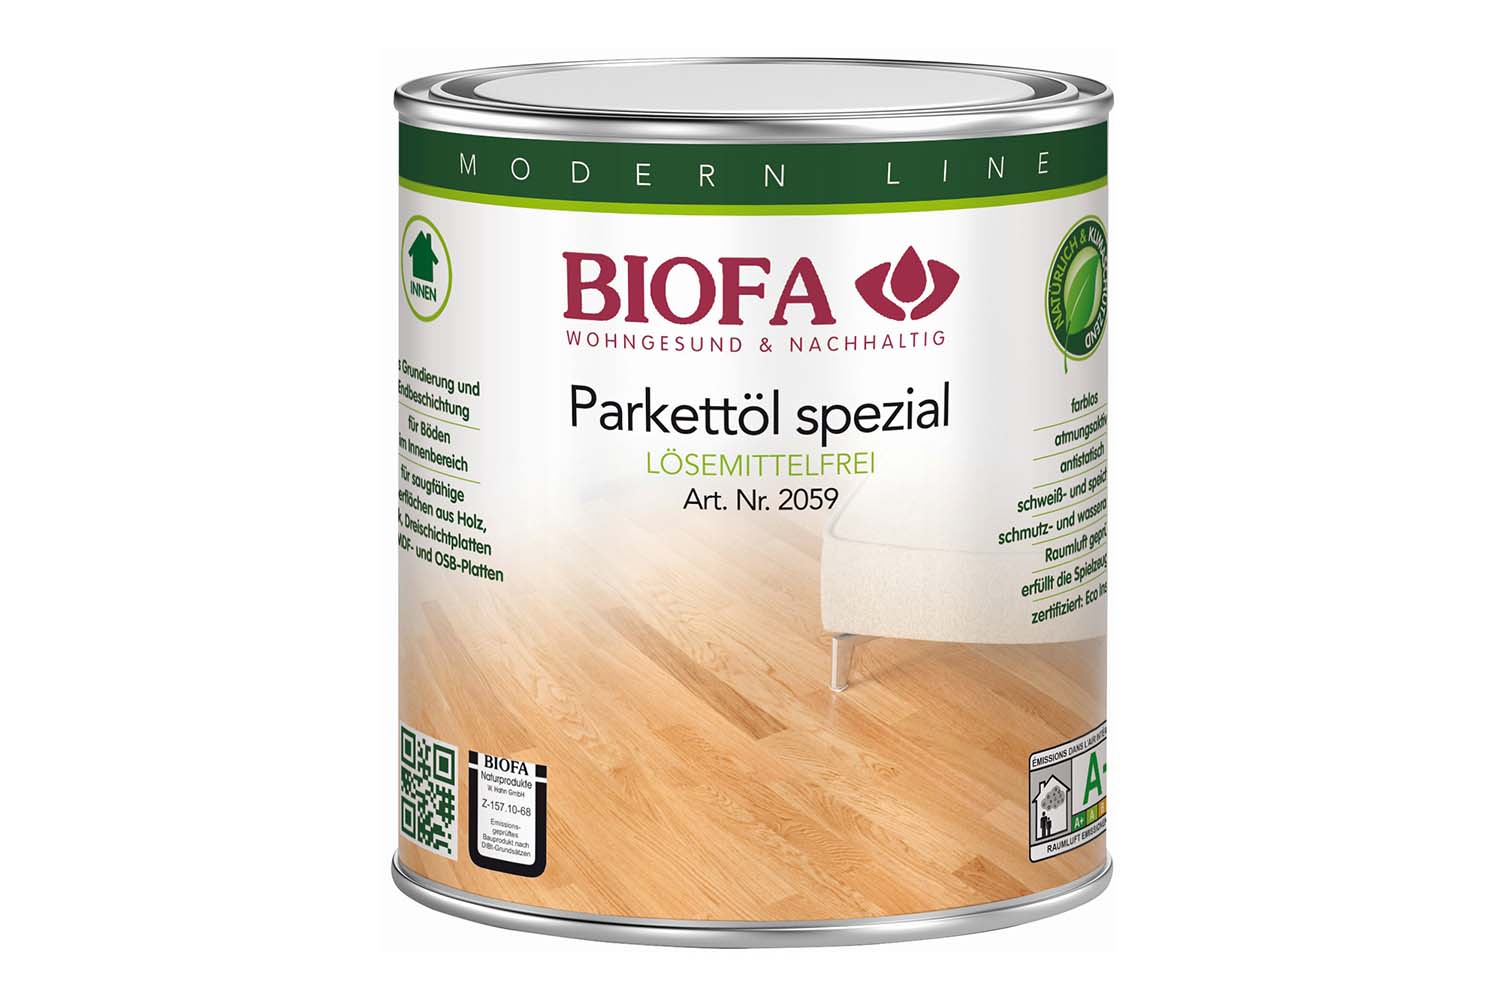 Biofa Parkettöl spezial lösemittelfrei